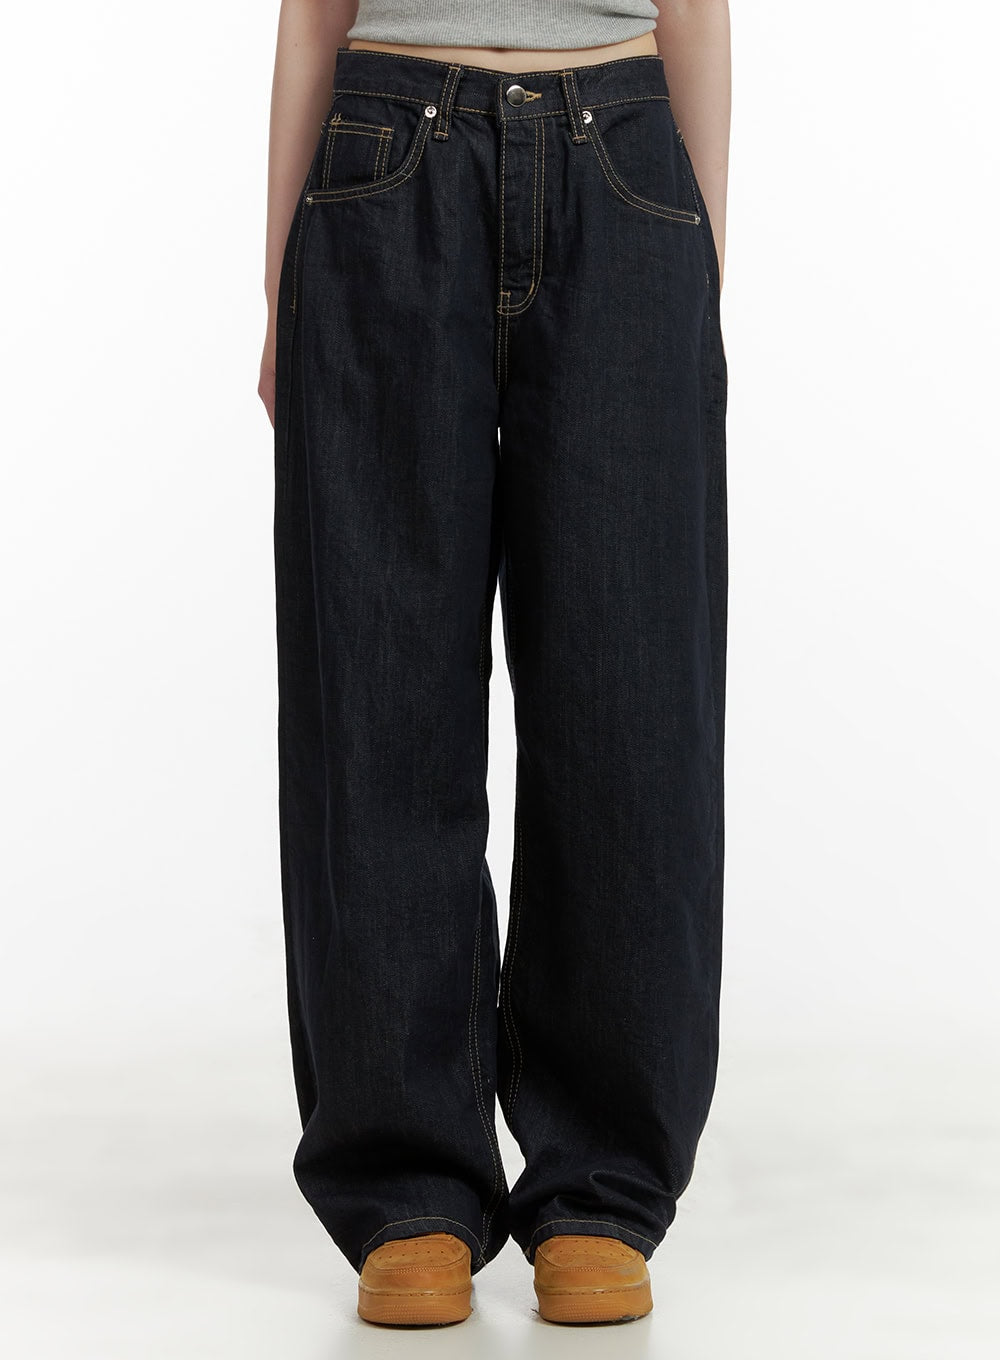 stitch-detail-baggy-jeans-cu410 / Dark blue